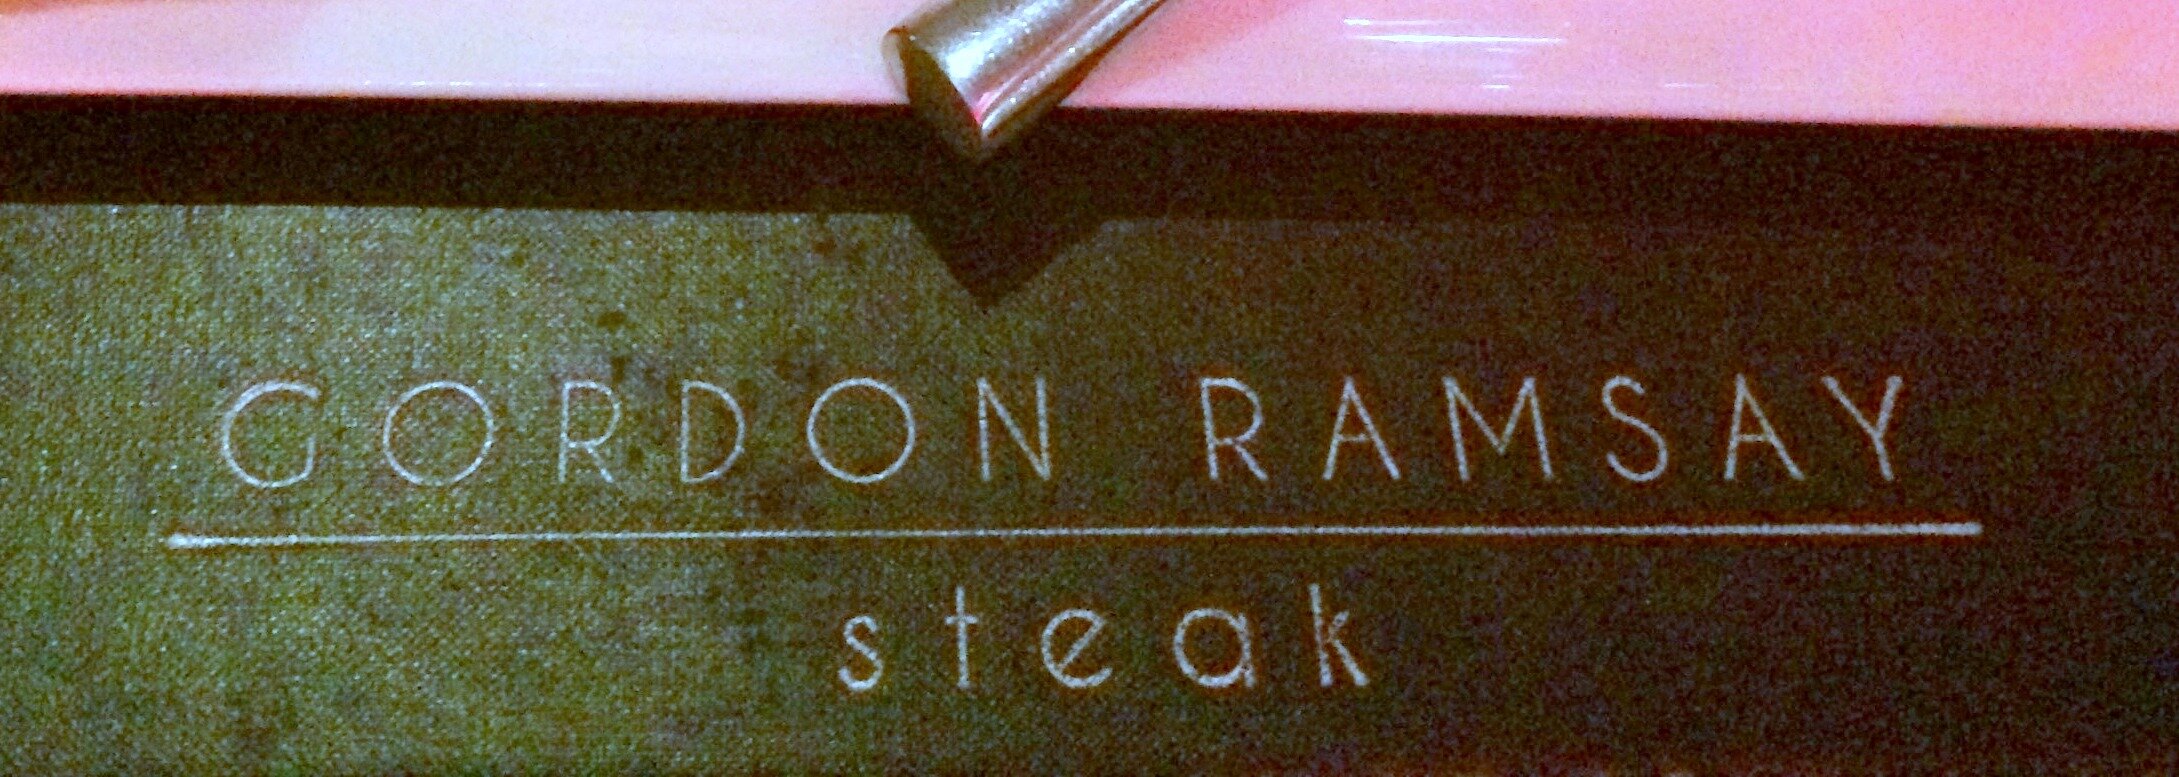 Dinner at Gordon Ramsay’s Steak in Las Vegas